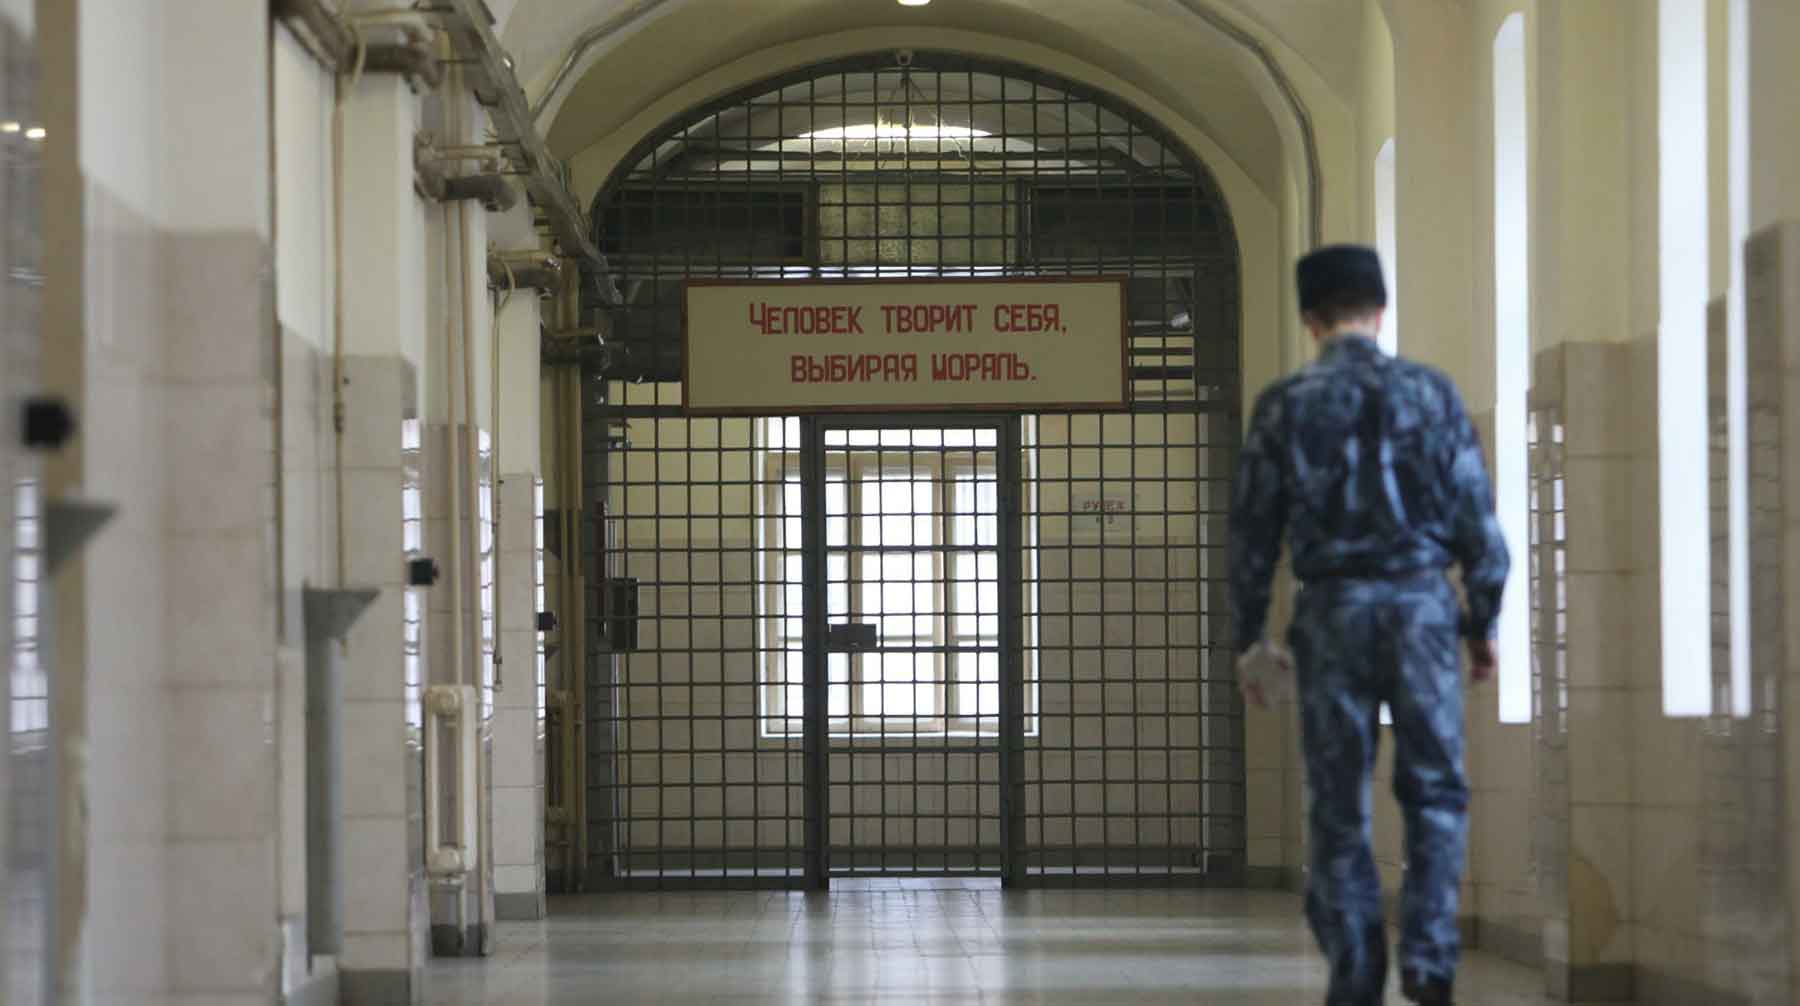 С их помощью заключенные смогут заказывать дополнительное питание, электронные письма или обращаться к администрации Фото: © GLOBAL LOOK press / Pravda Komsomolskaya